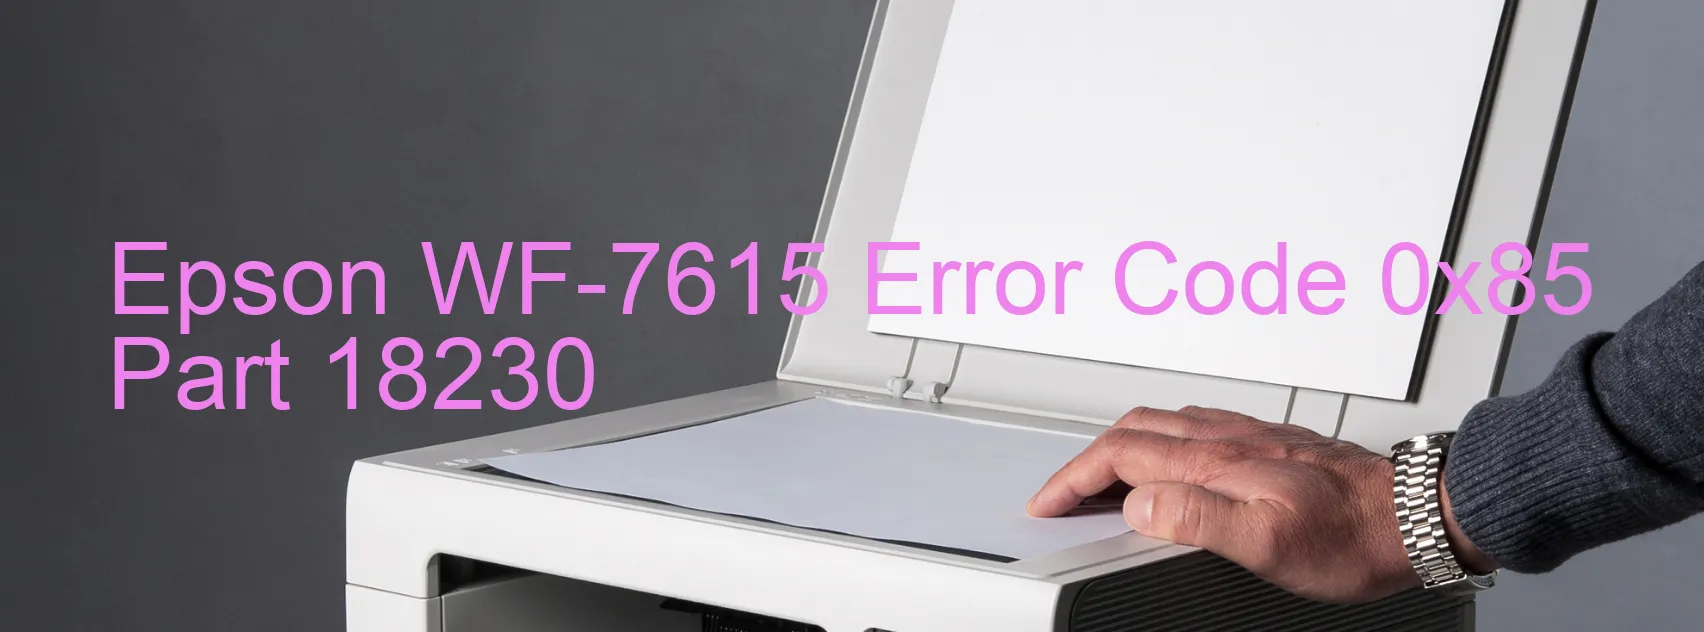 Epson WF-7615 Error Code 0x85 Part 18230